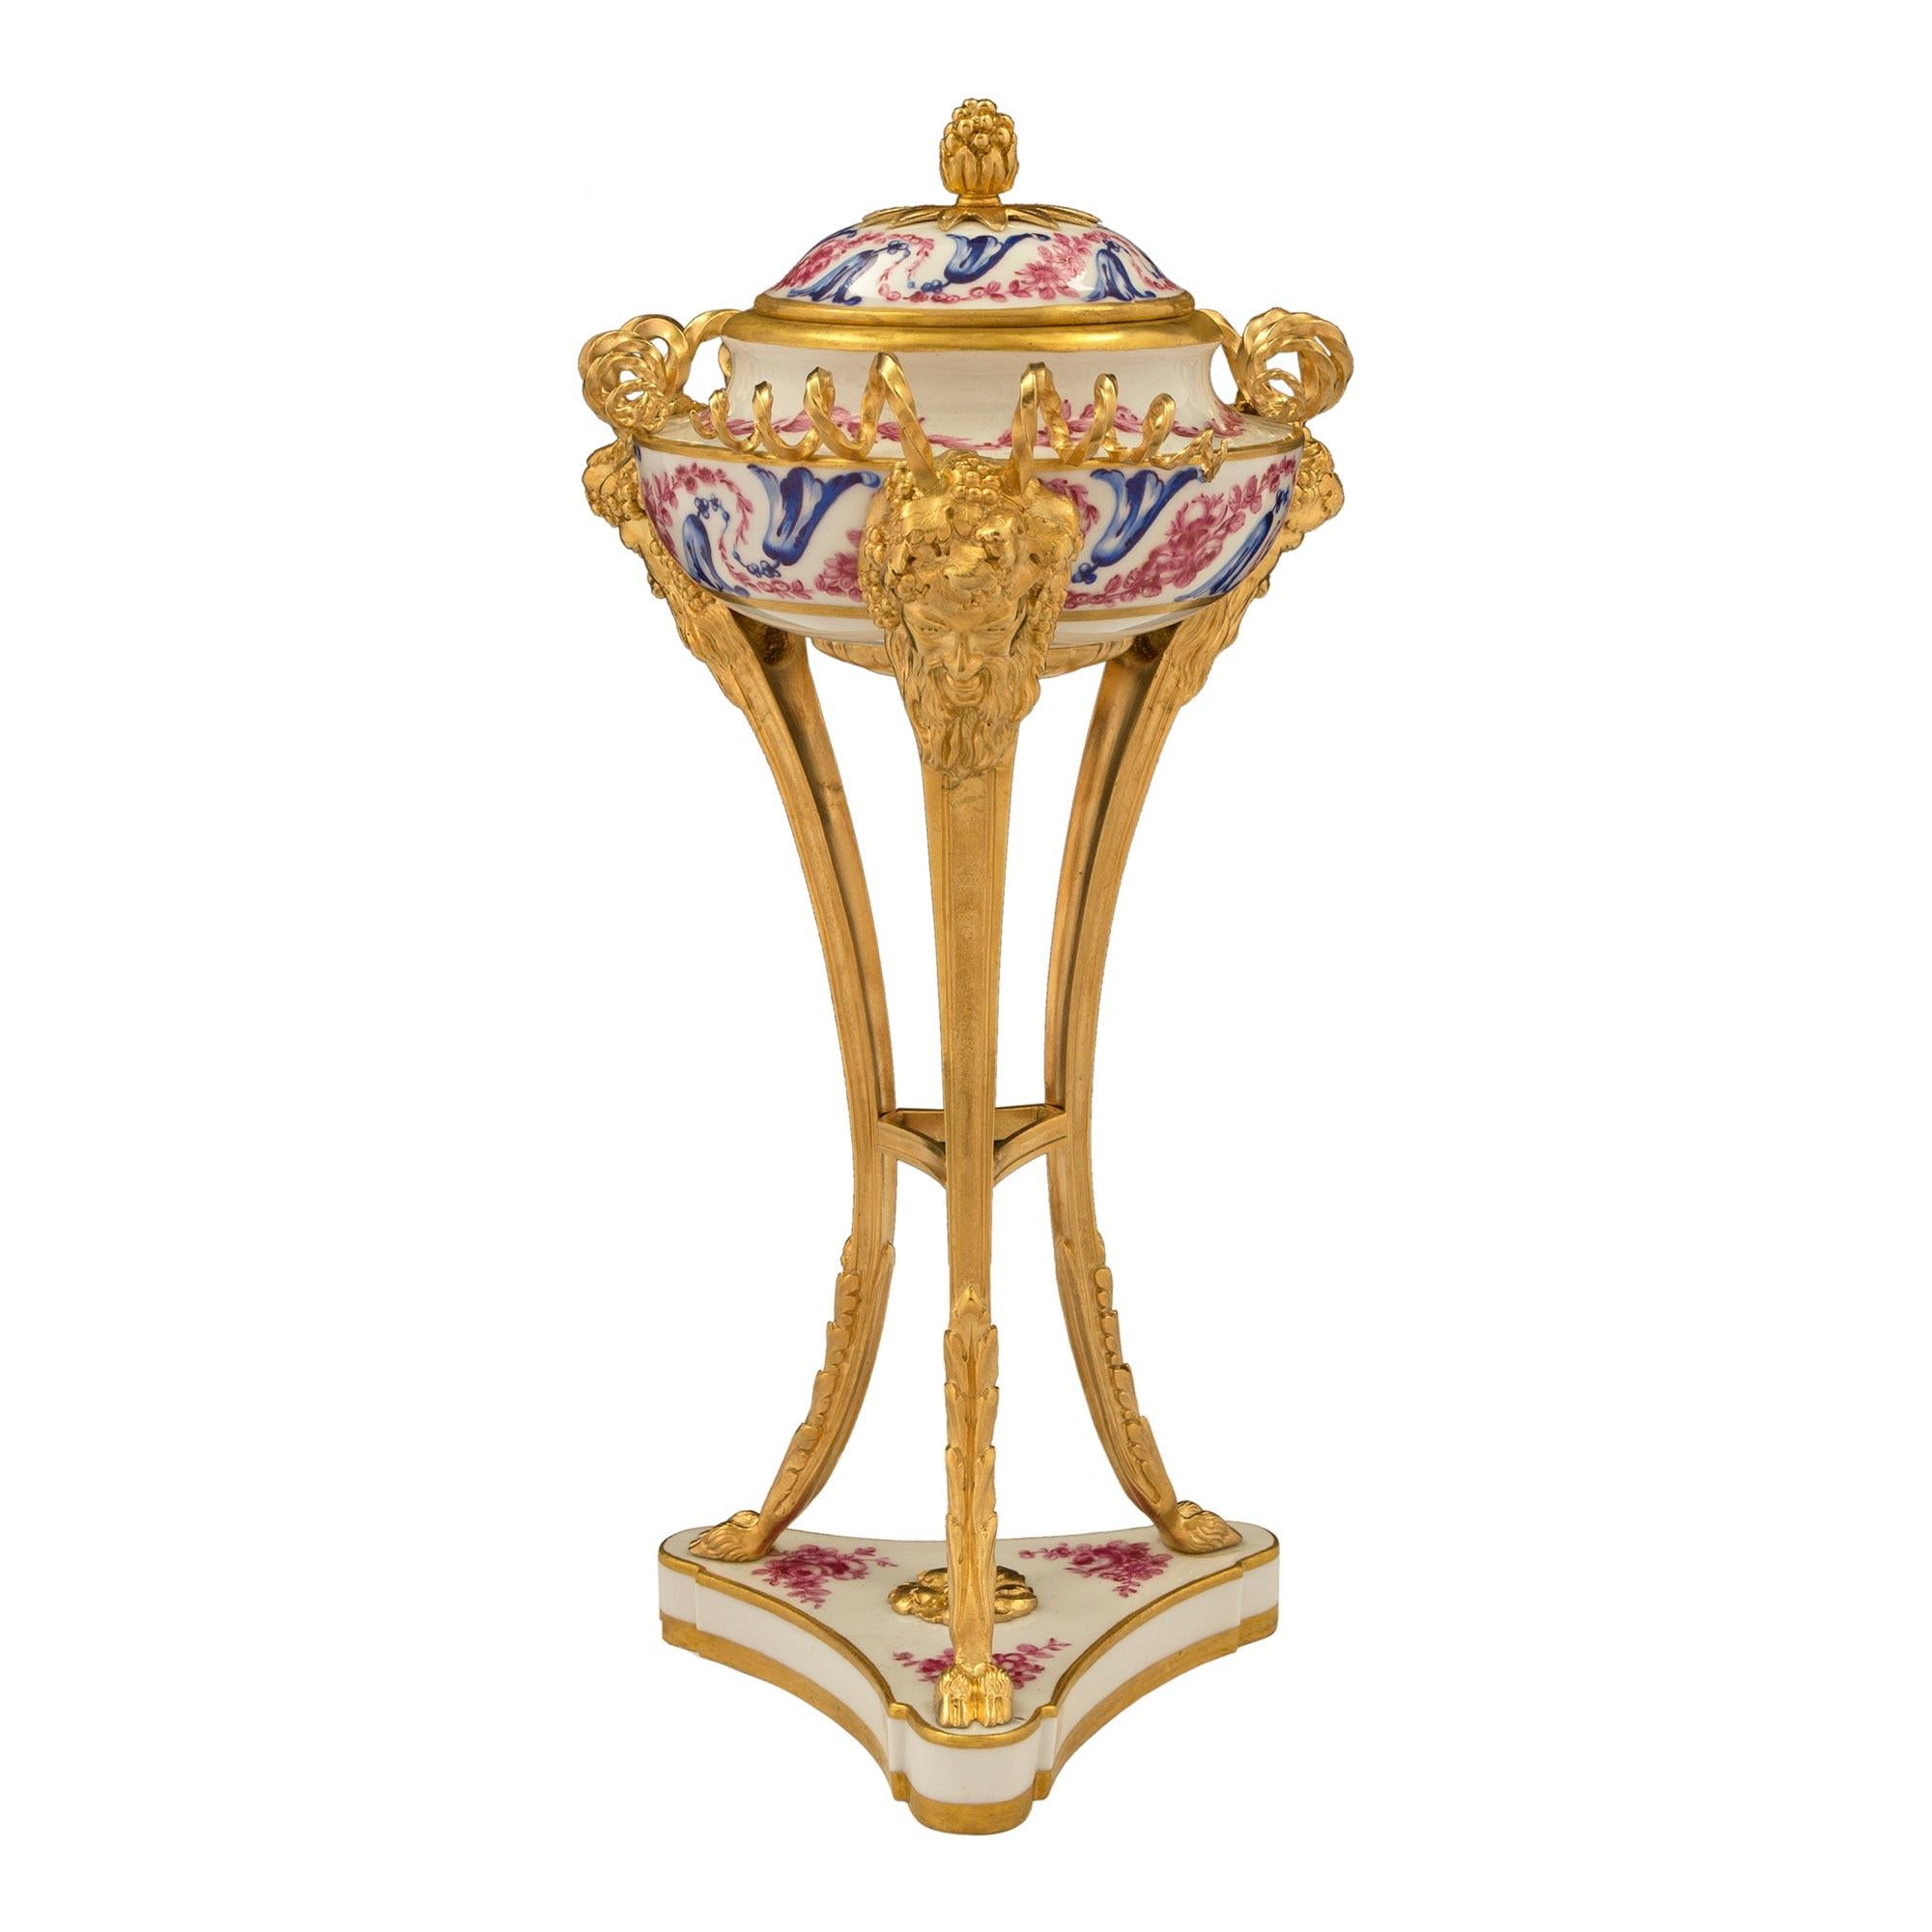 Ein sehr elegantes Paar französischer Sèvres-Porzellan- und Ormoludeckelurnen aus dem 19. Jede Urne wird von einem dreieckigen Porzellansockel mit konkaven Seiten und abgerundeten Ecken getragen. Der Sockel weist vergoldete Bänder und fein